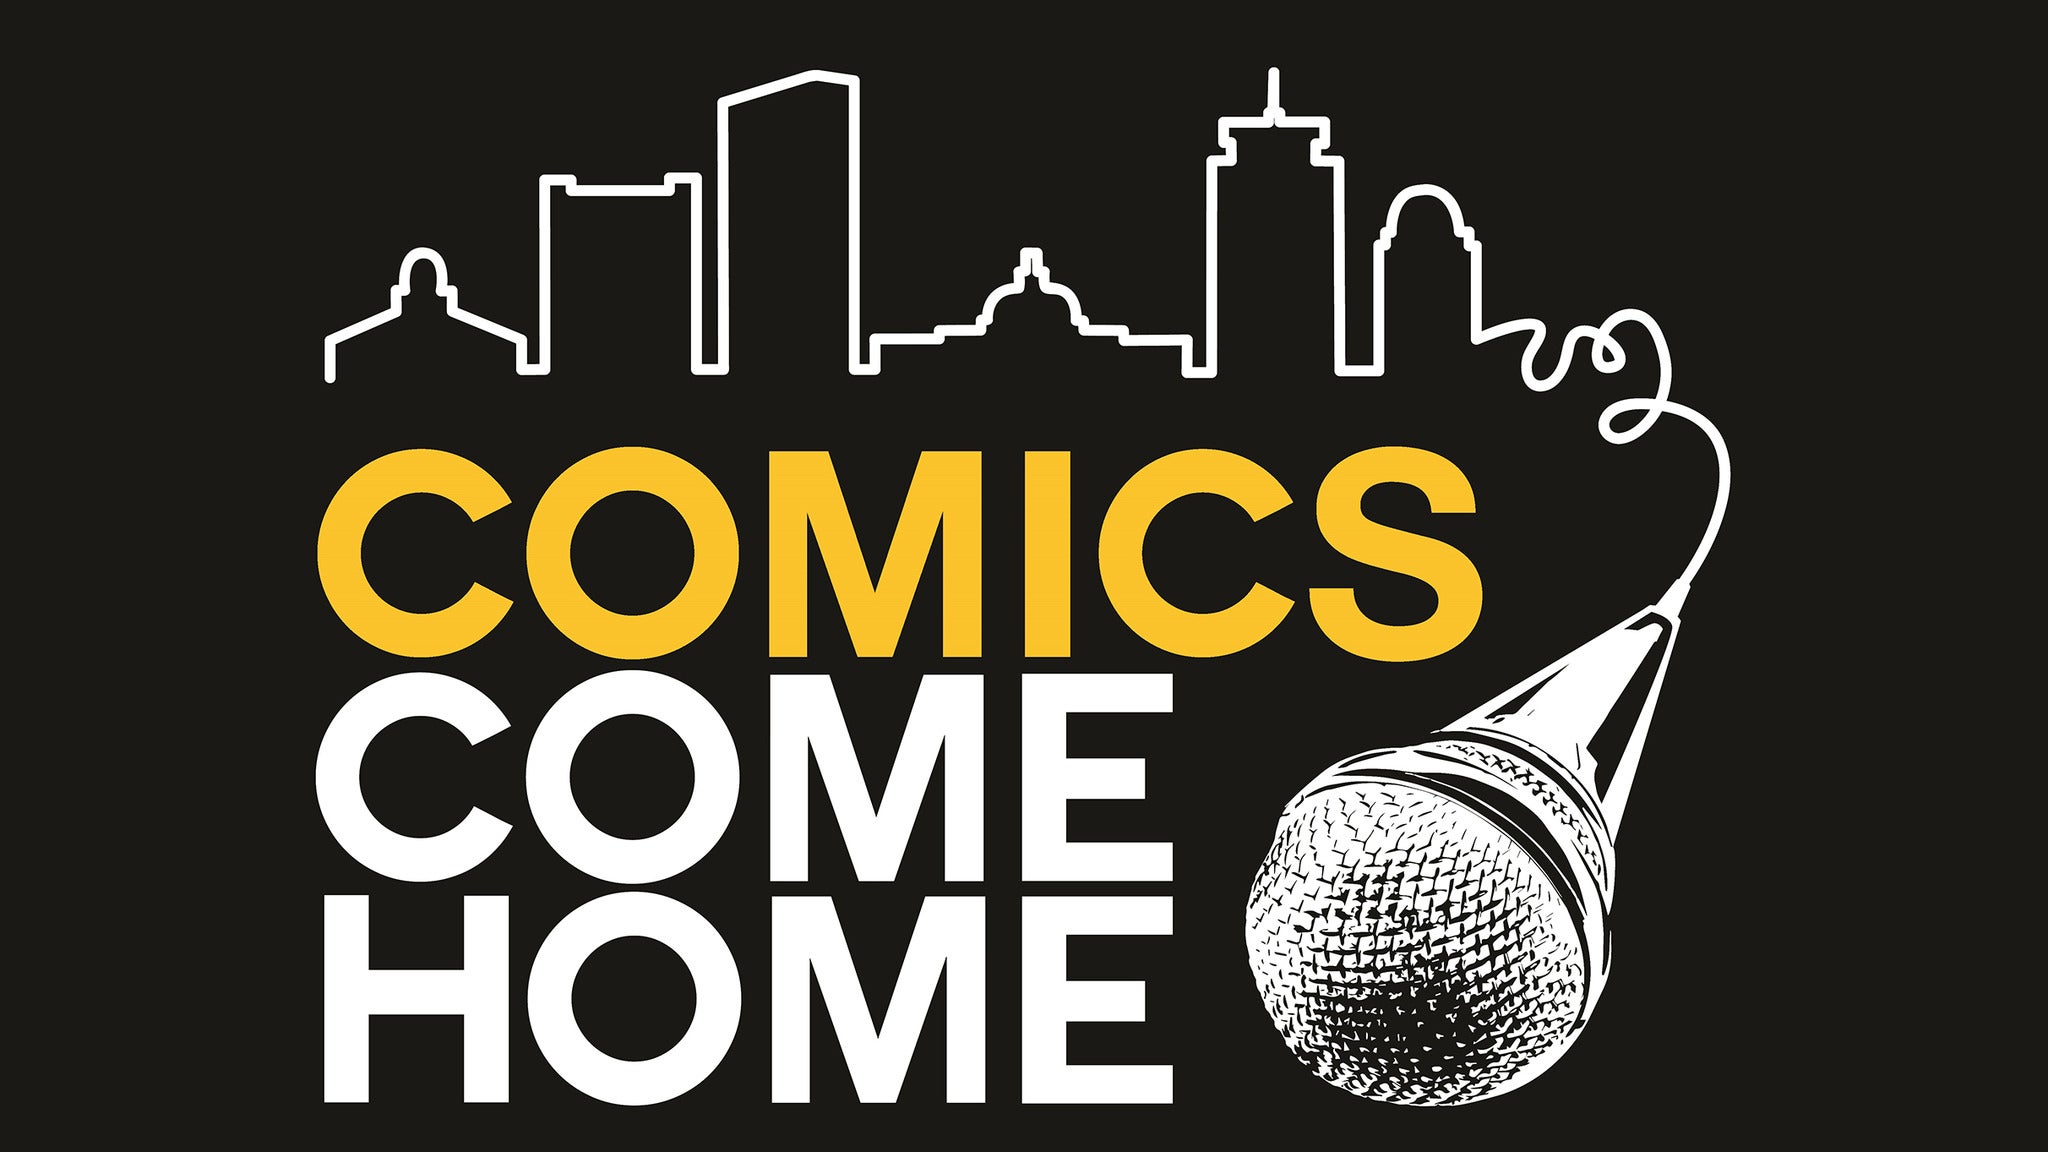 Comics Come Home in Boston promo photo for Exclusive presale offer code